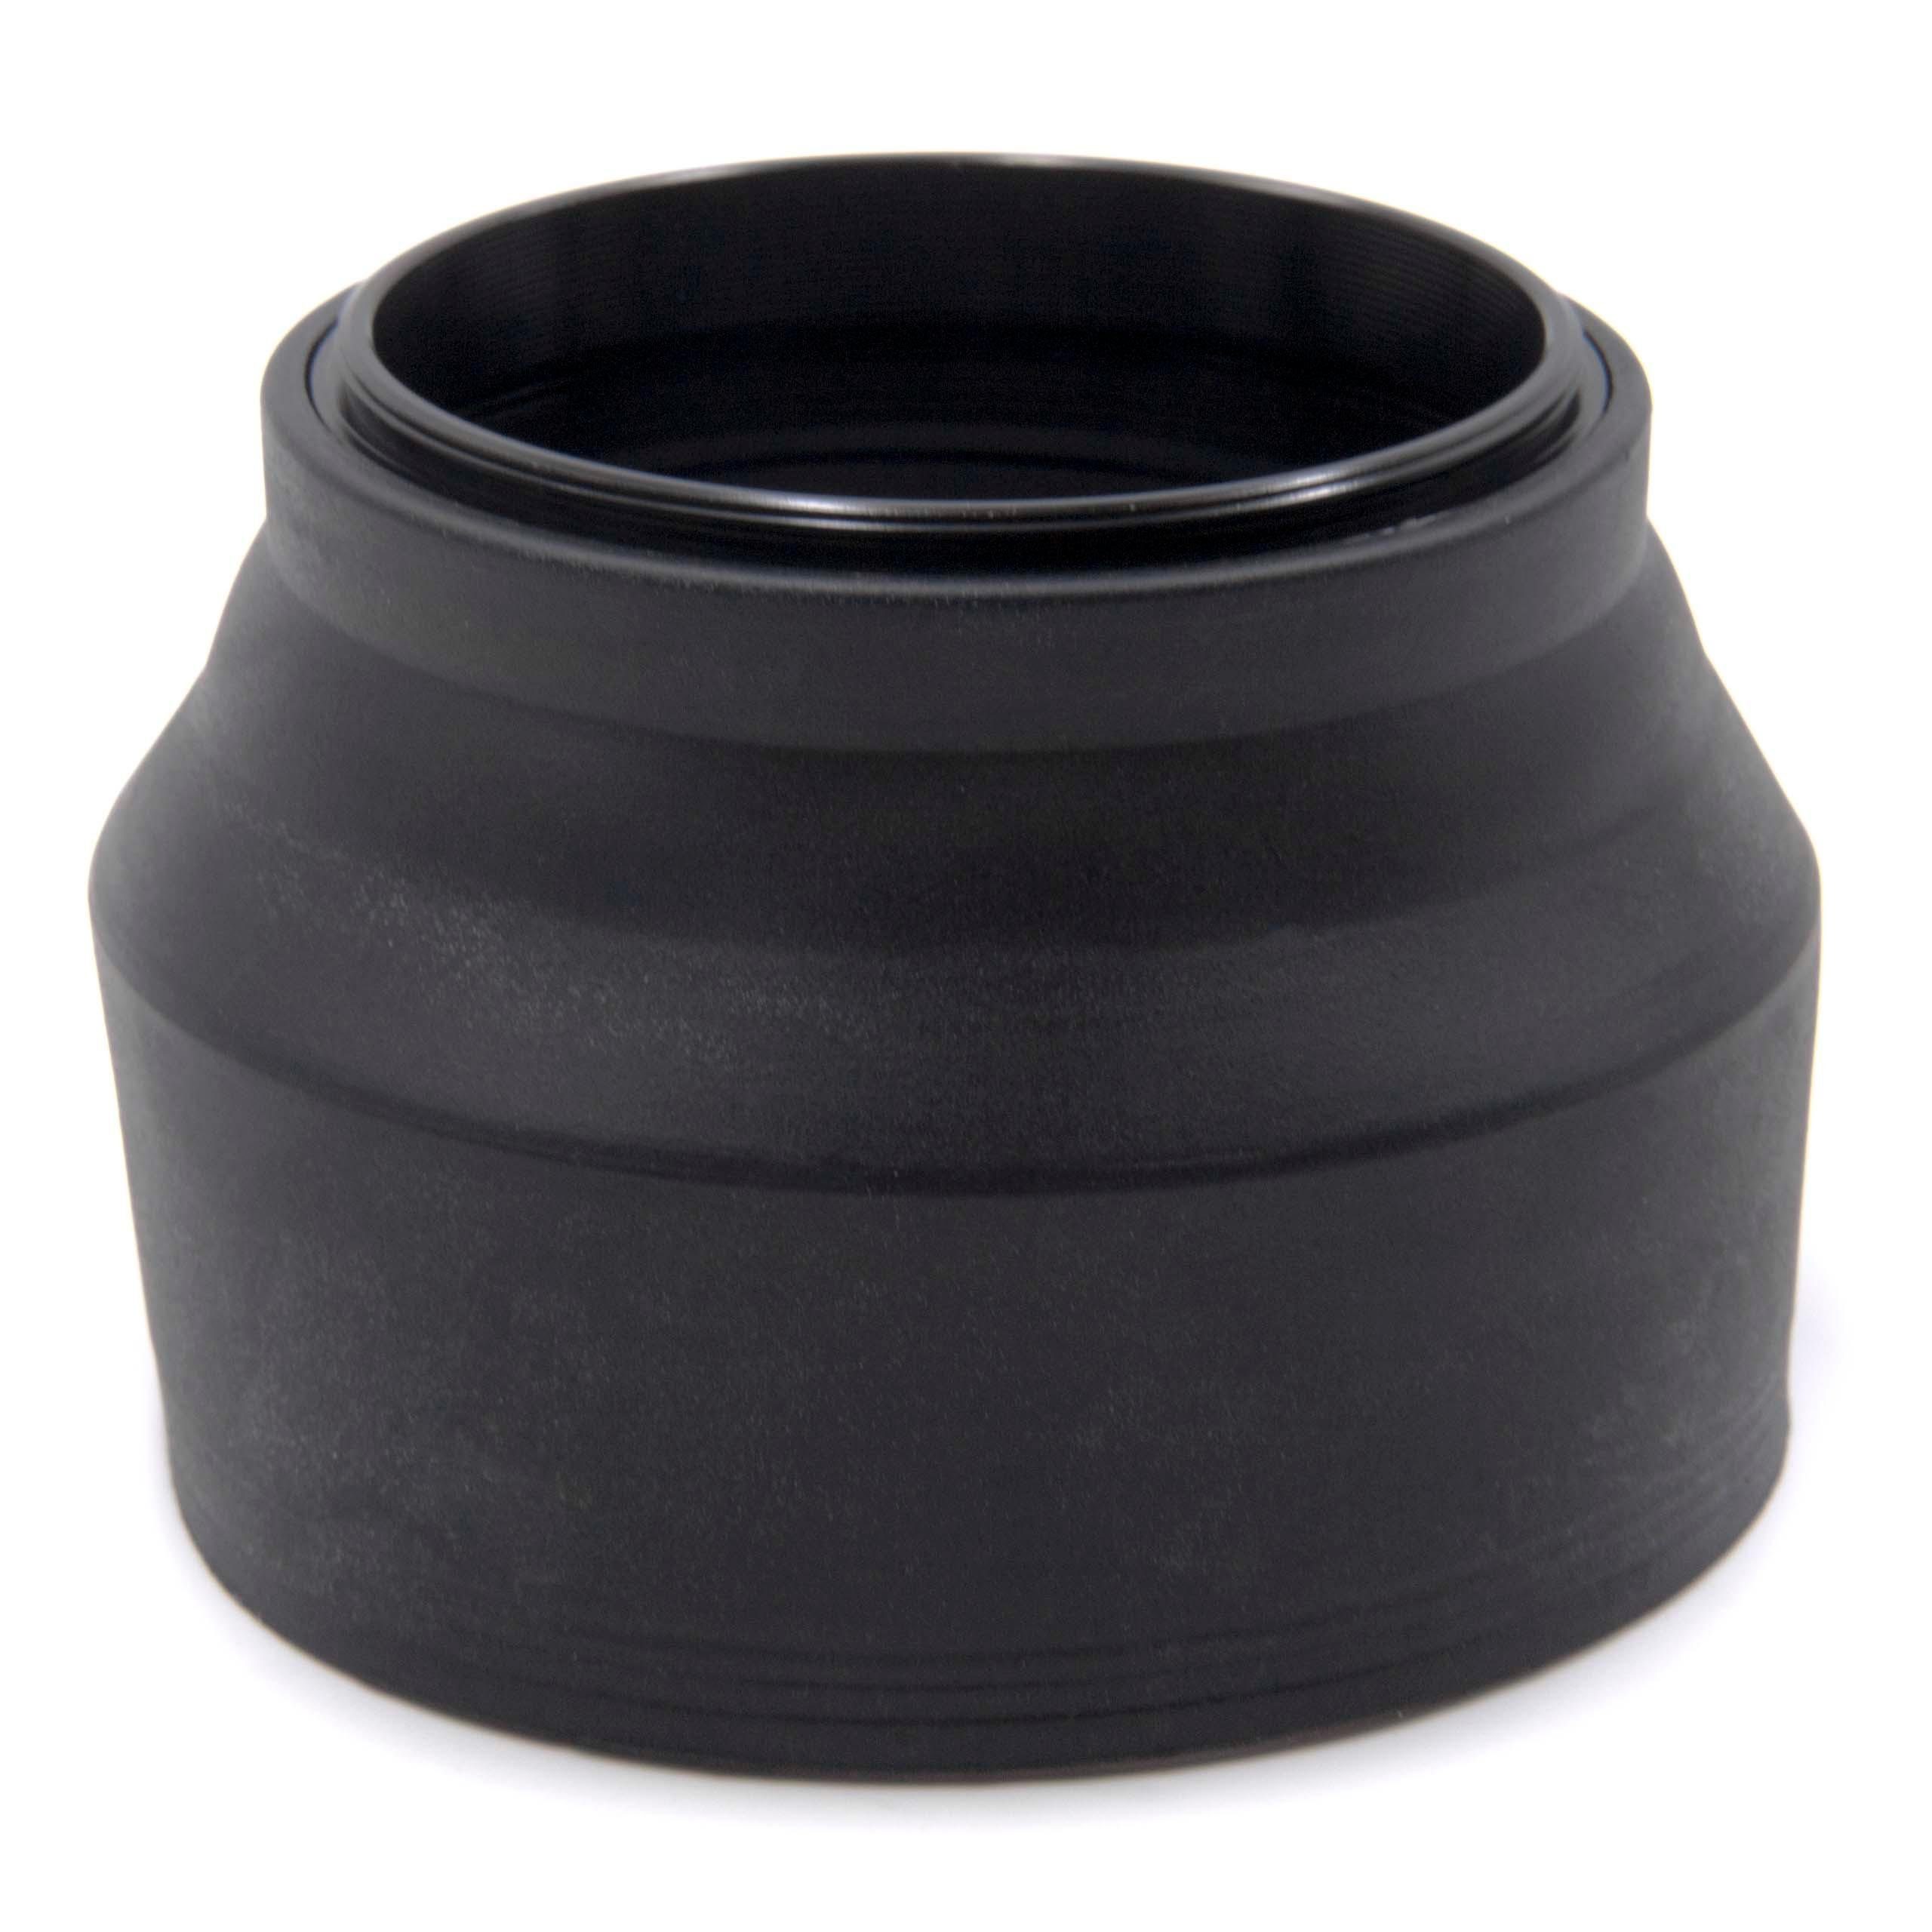 NX Kamera vhbw 50-200mm OIS Lens passend III i-Funct. für 4-5.6 ED Samsung Gegenlichtblende